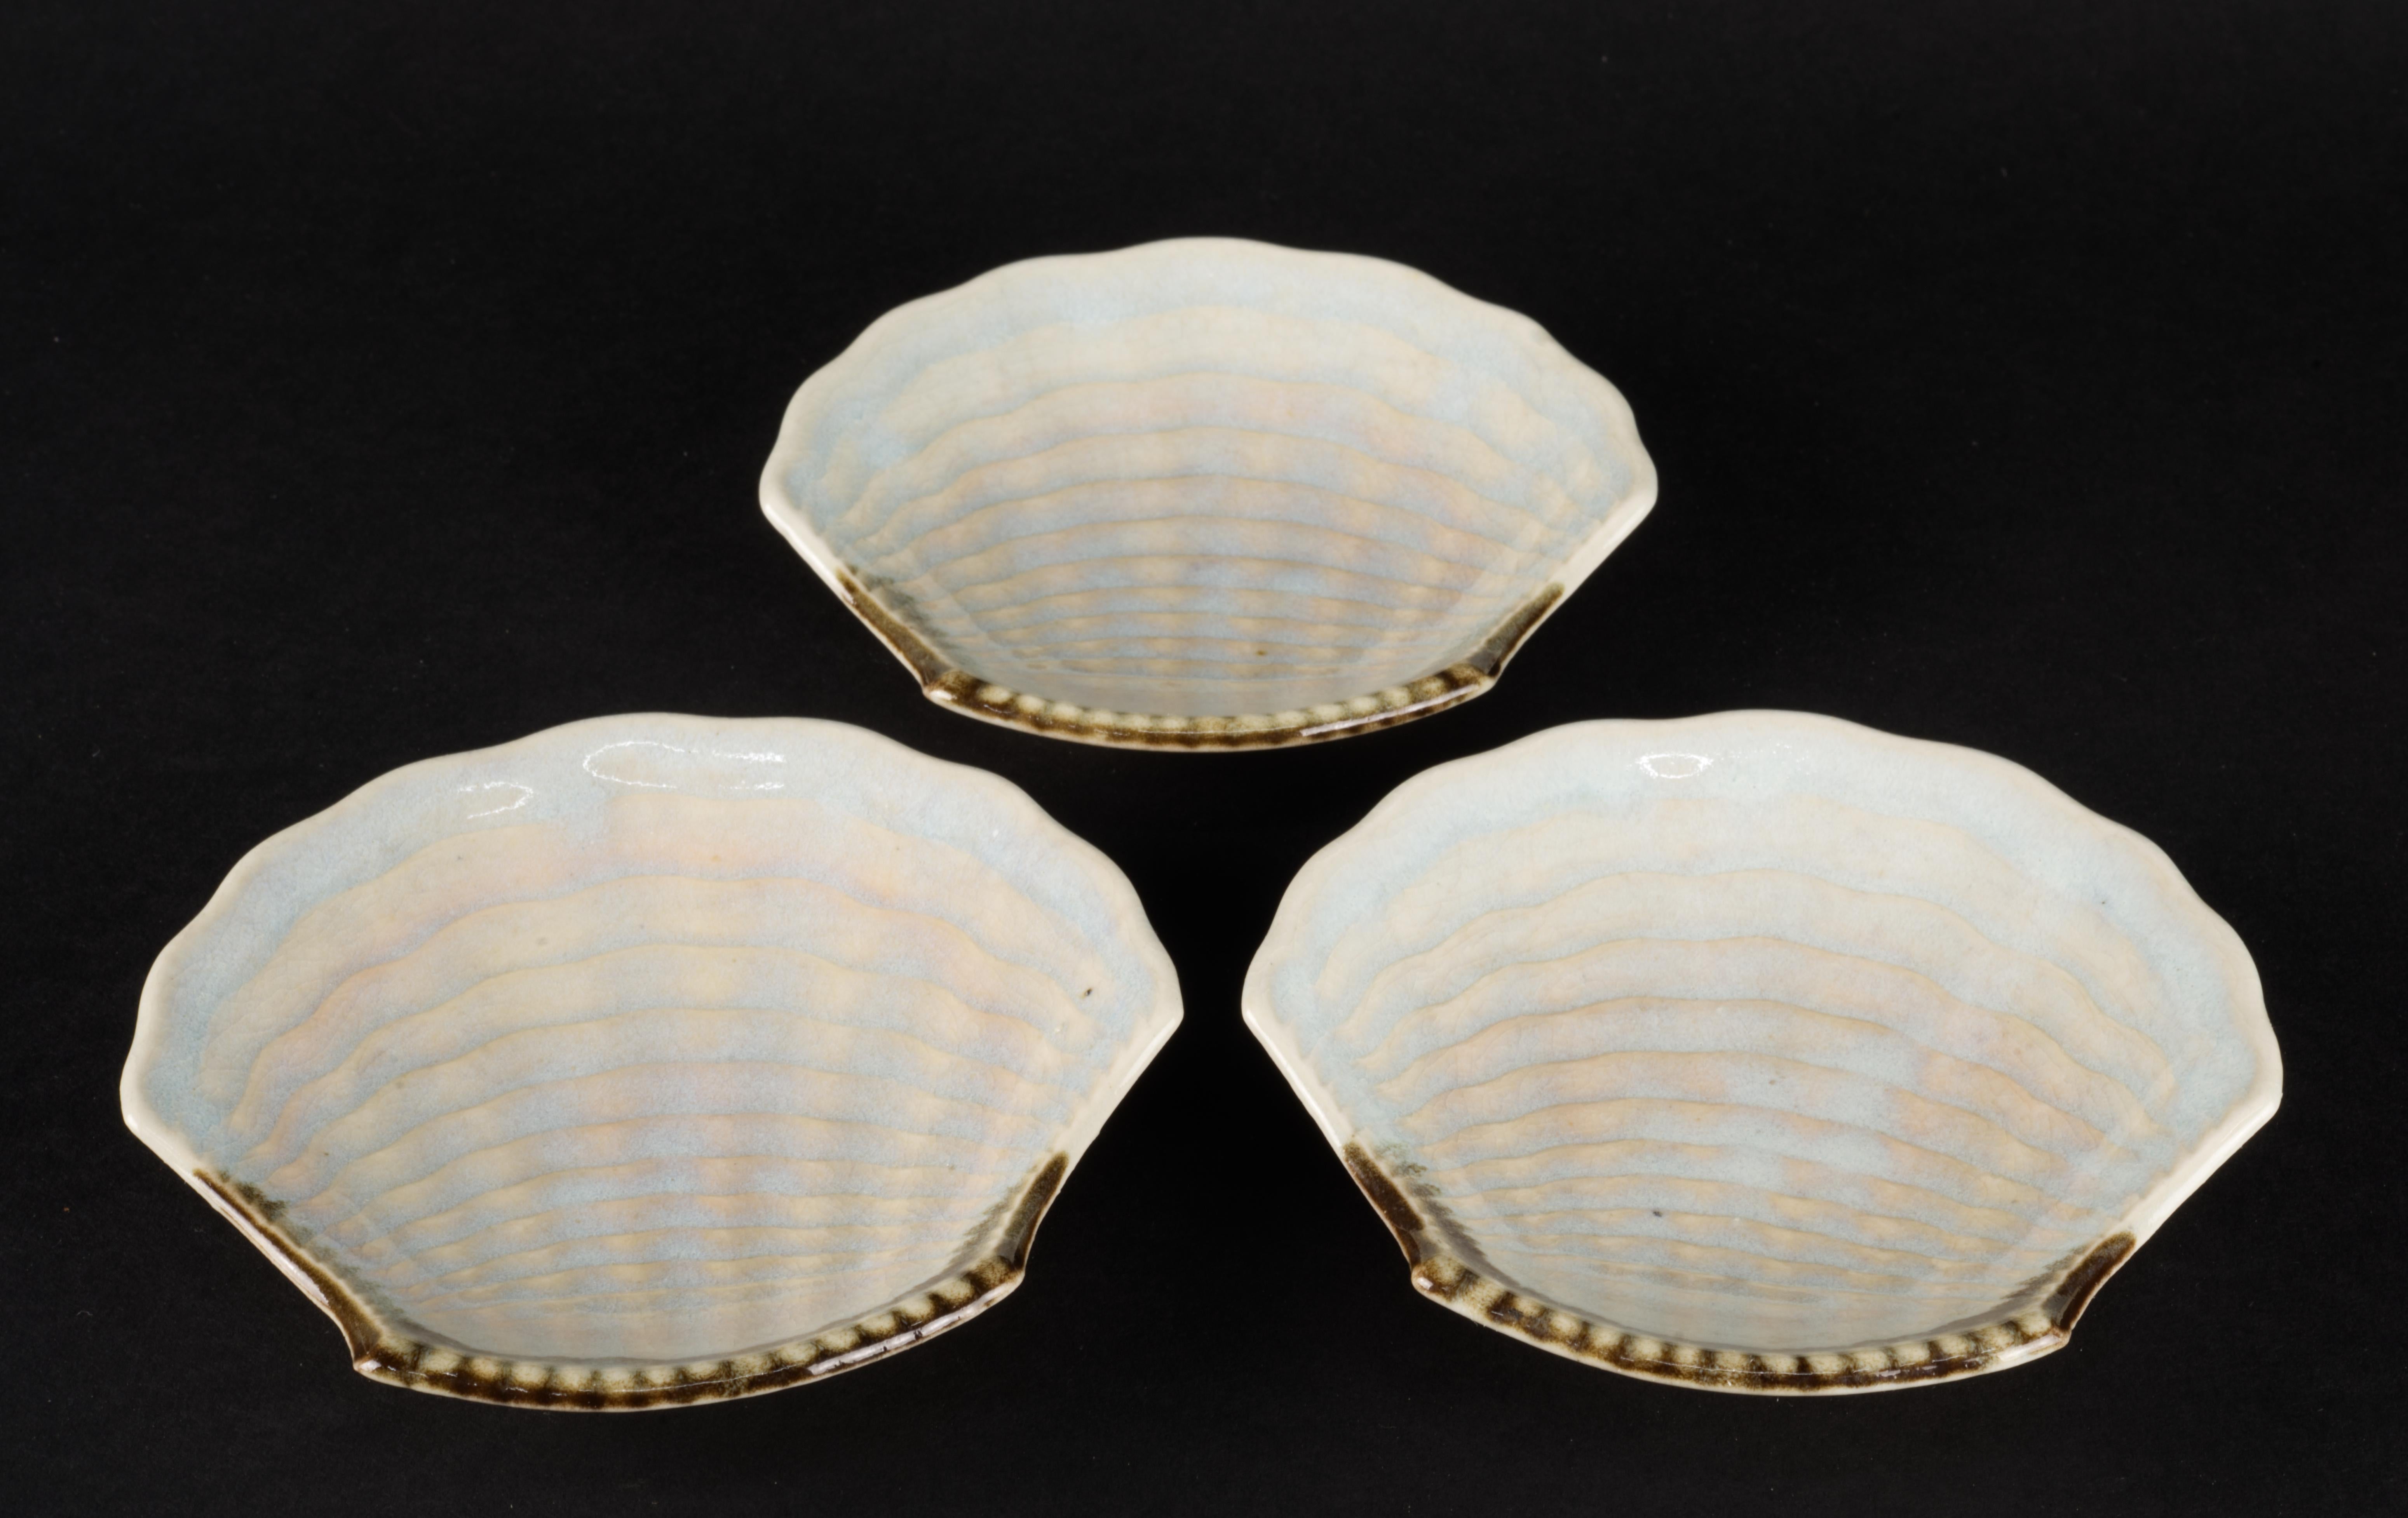 Ensemble de 3 petites assiettes ou bols en forme de coquillage, décorés à la main en glaçure craquelée dans des tons bleus et beiges avec un accent asymétrique de couleur marron terreux. Les surfaces texturées des bols sont mises en valeur par